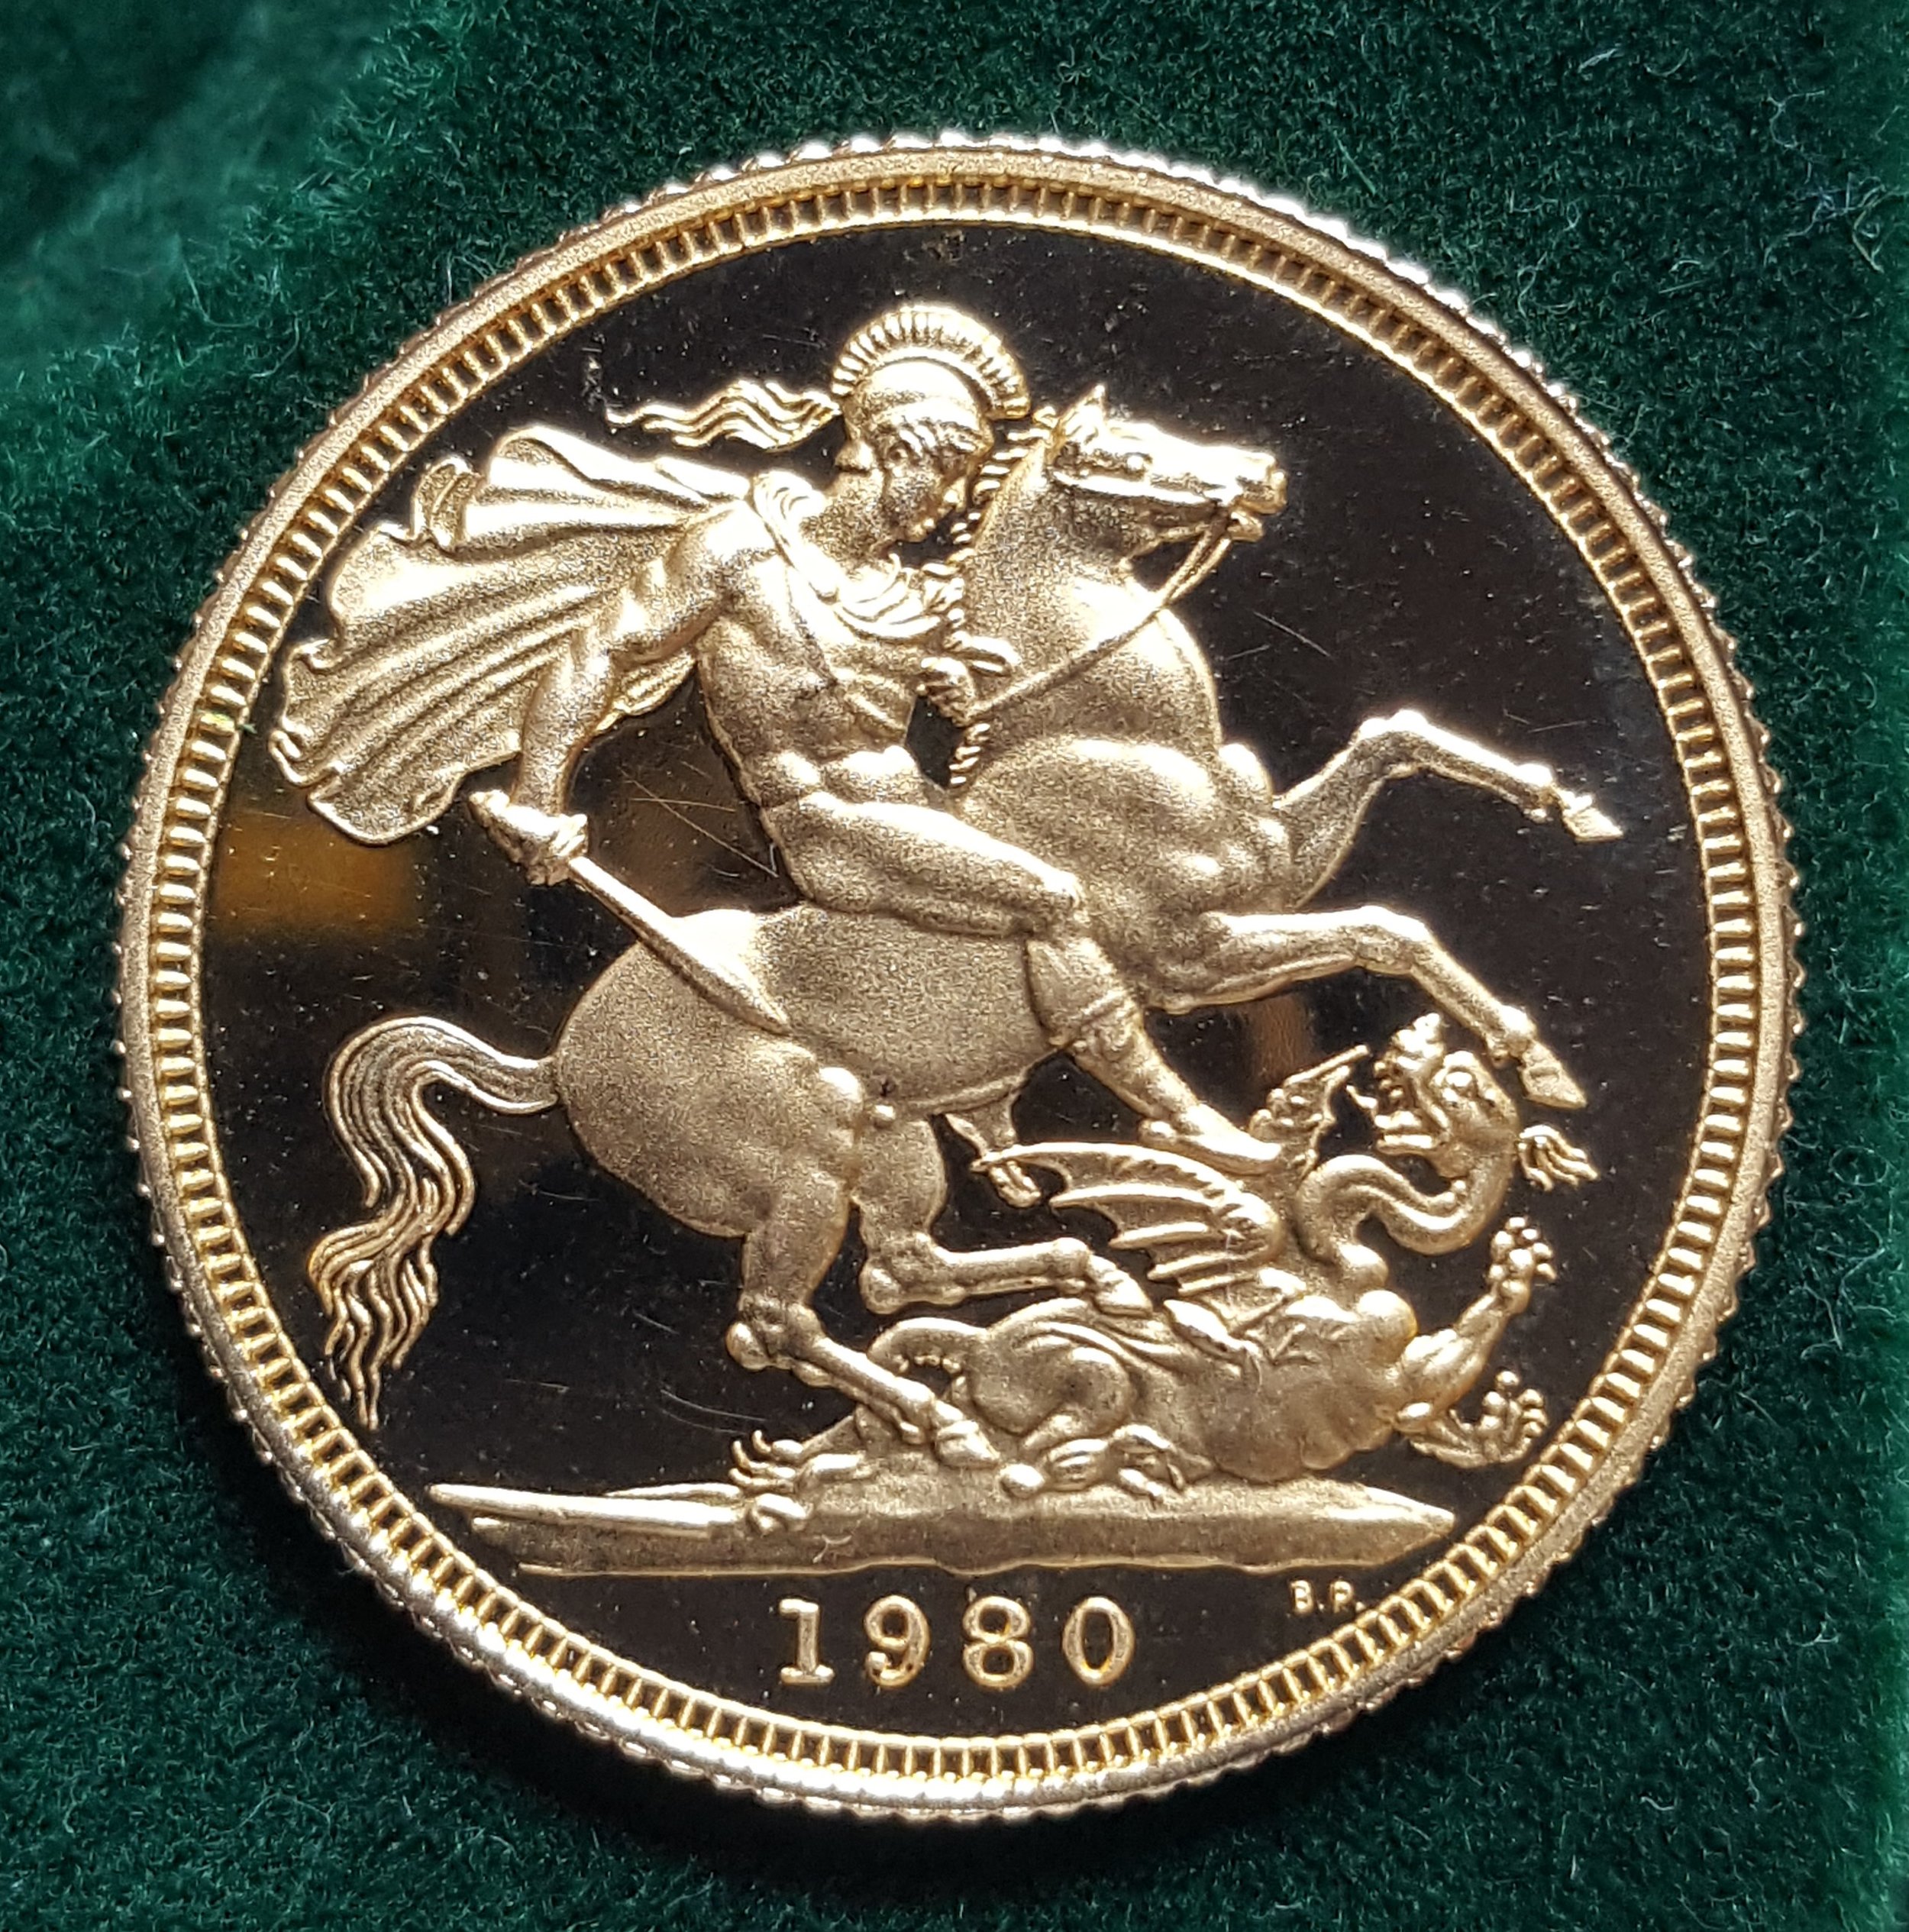 Queen Elizabeth II 1980 Proof Full Gold Sovereign.